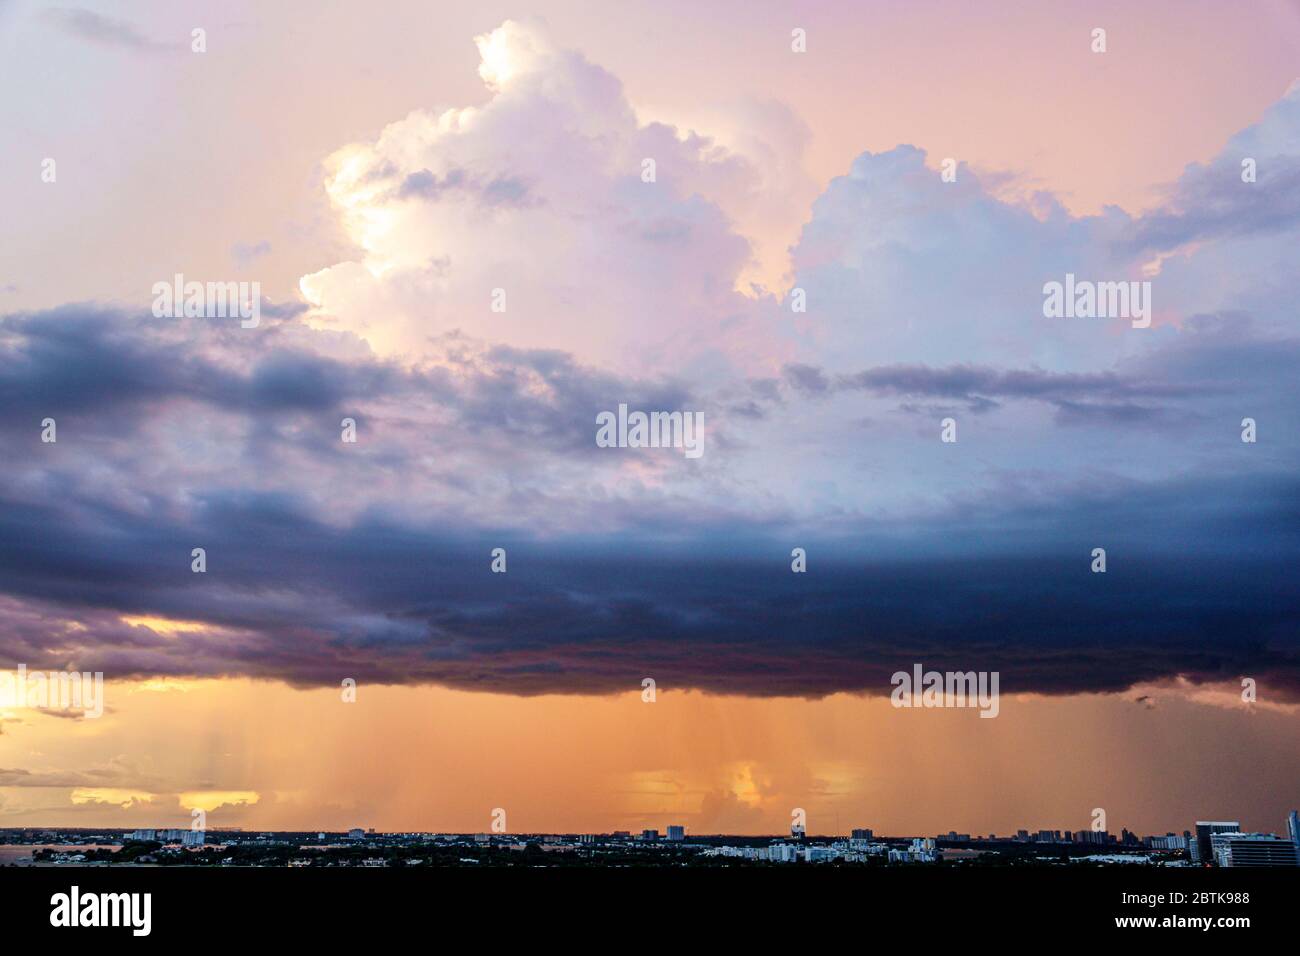 Miami Beach Florida, Himmel Sturm Wolken regen Regensturm, Besucher reisen Reise Tour Tourismus Wahrzeichen, Kultur Kultur Kultur Urlaub Gruppe Stockfoto